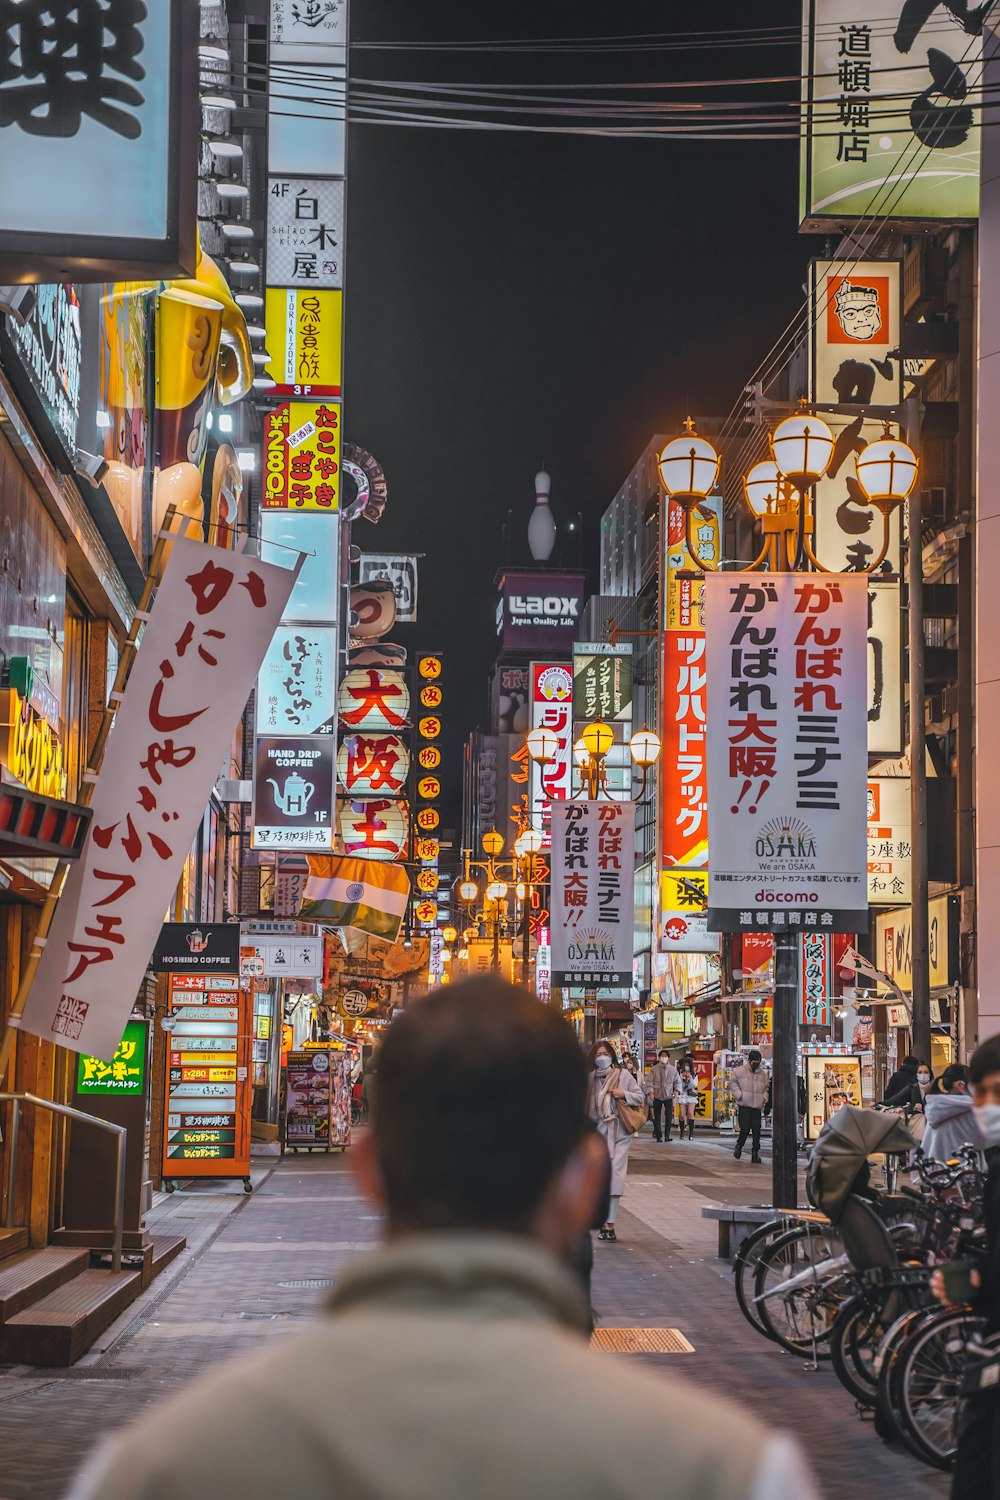 Un homme marchant dans une rue de la ville la nuit